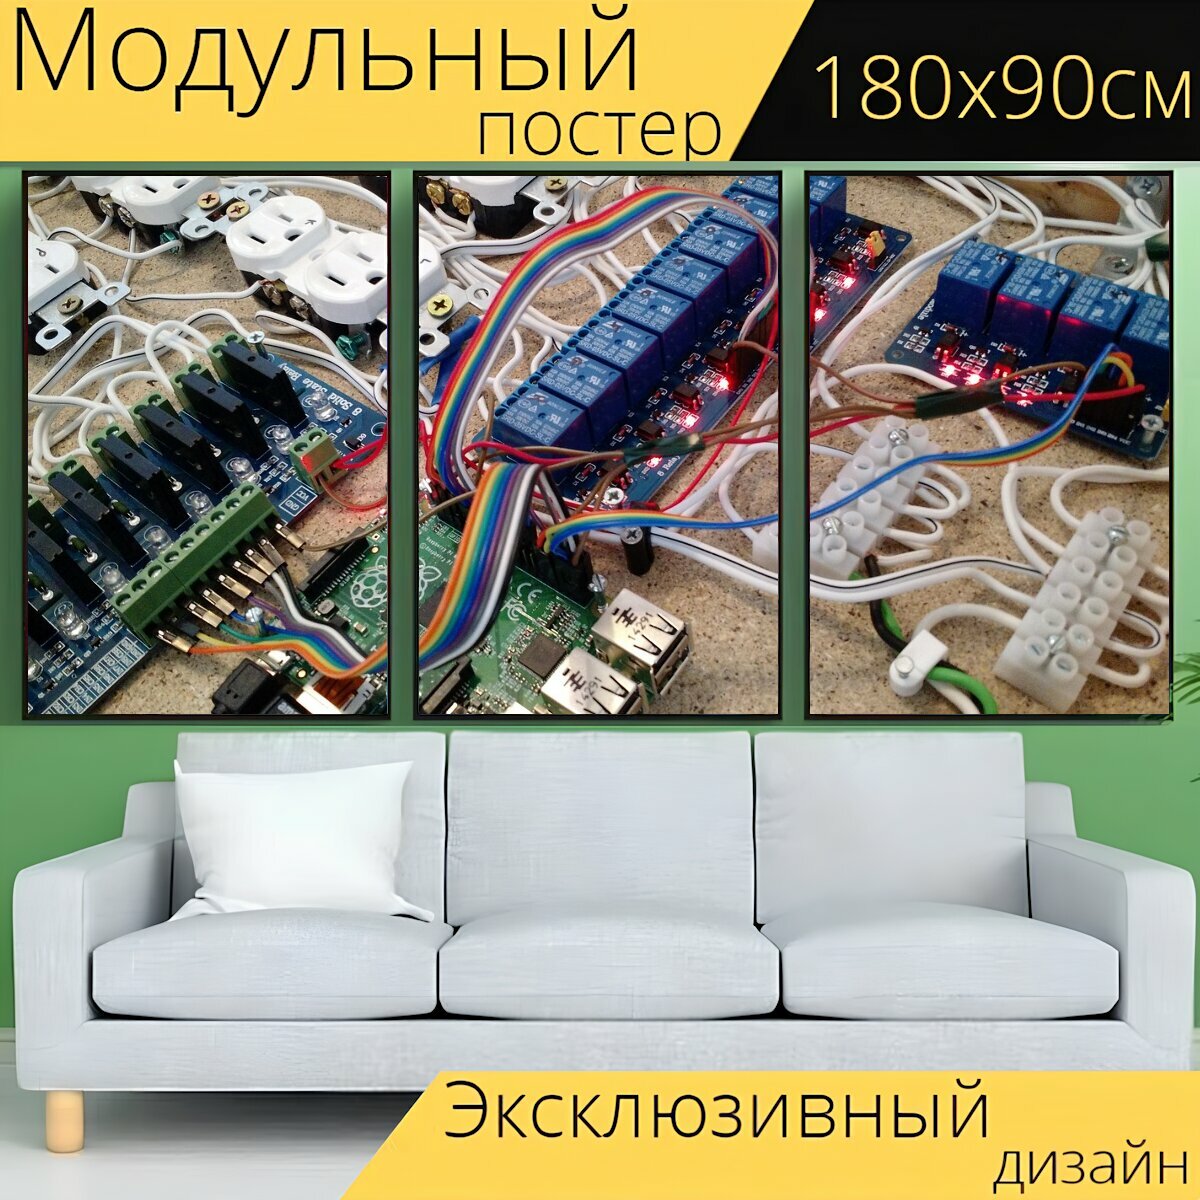 Модульный постер "Электроника, печатная плата, технология" 180 x 90 см. для интерьера